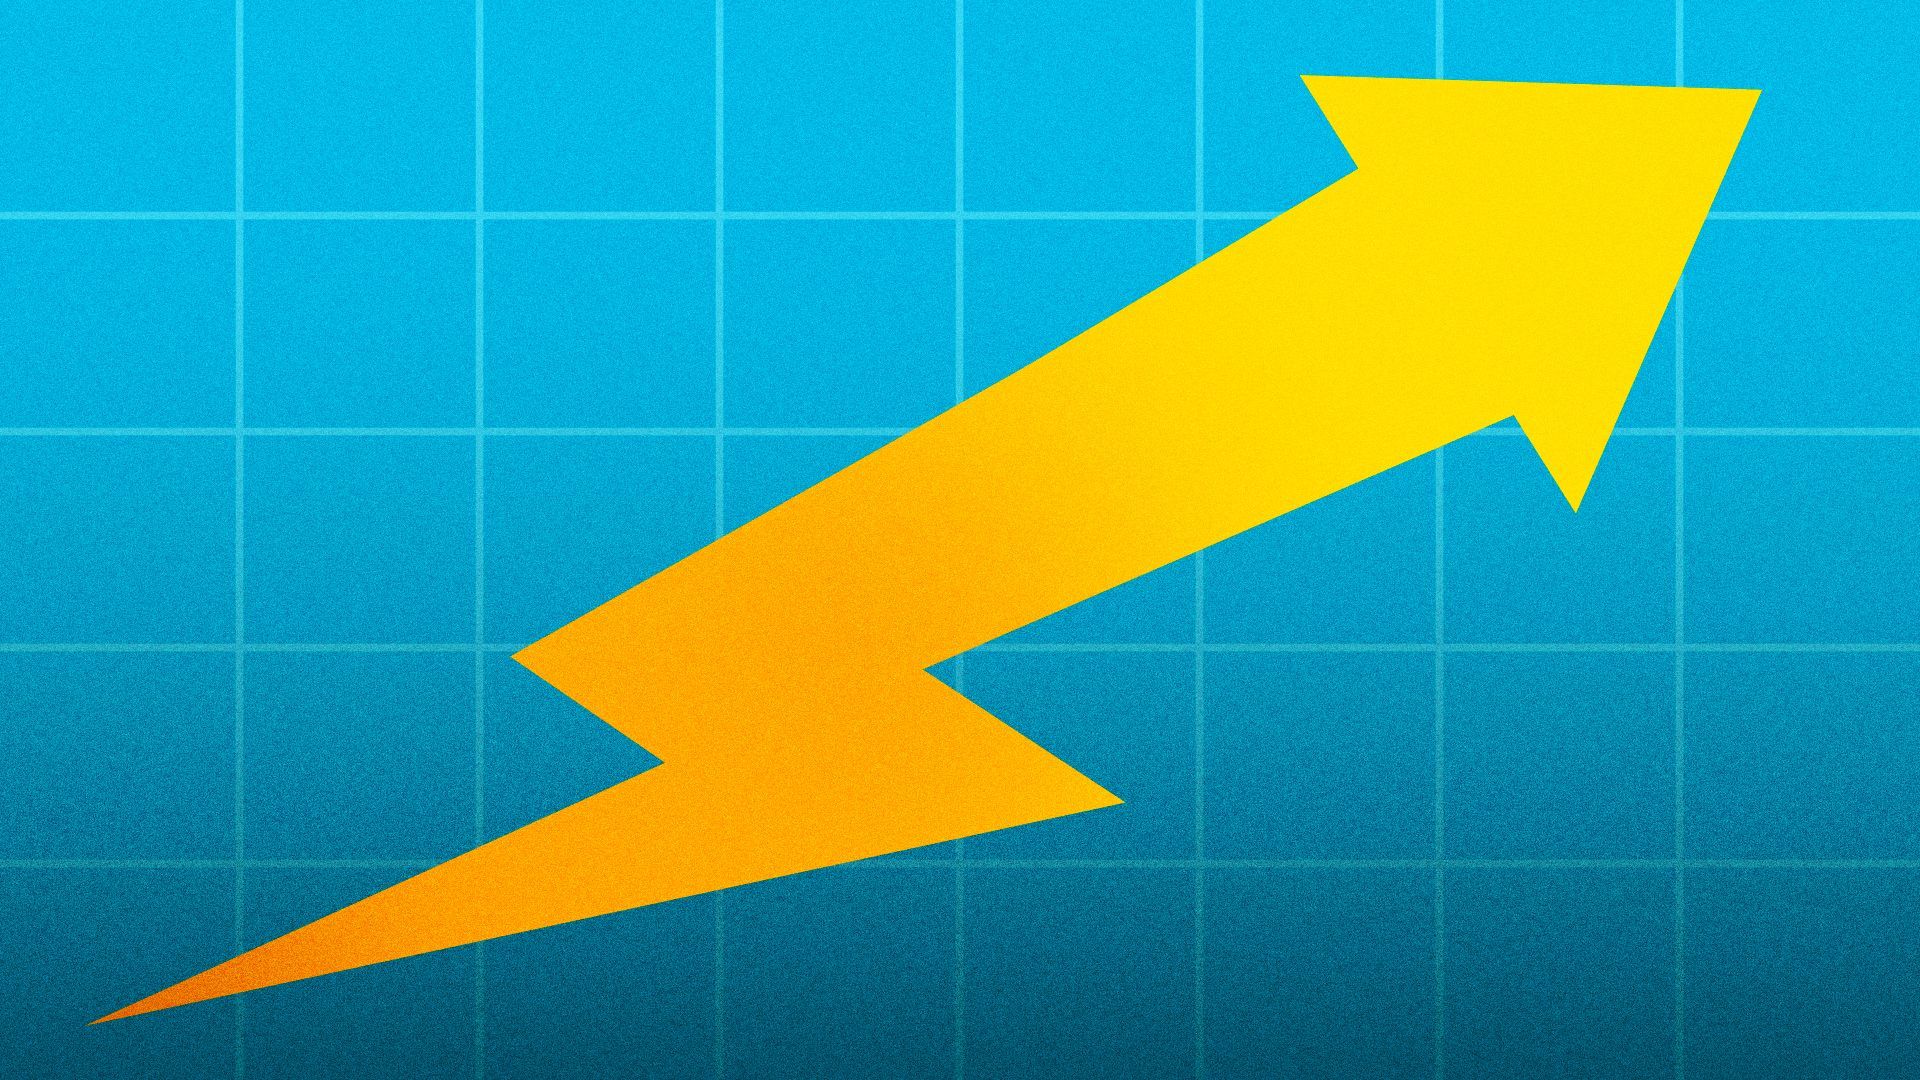 Illustration of an upward trending arrow made of a lightning bolt.